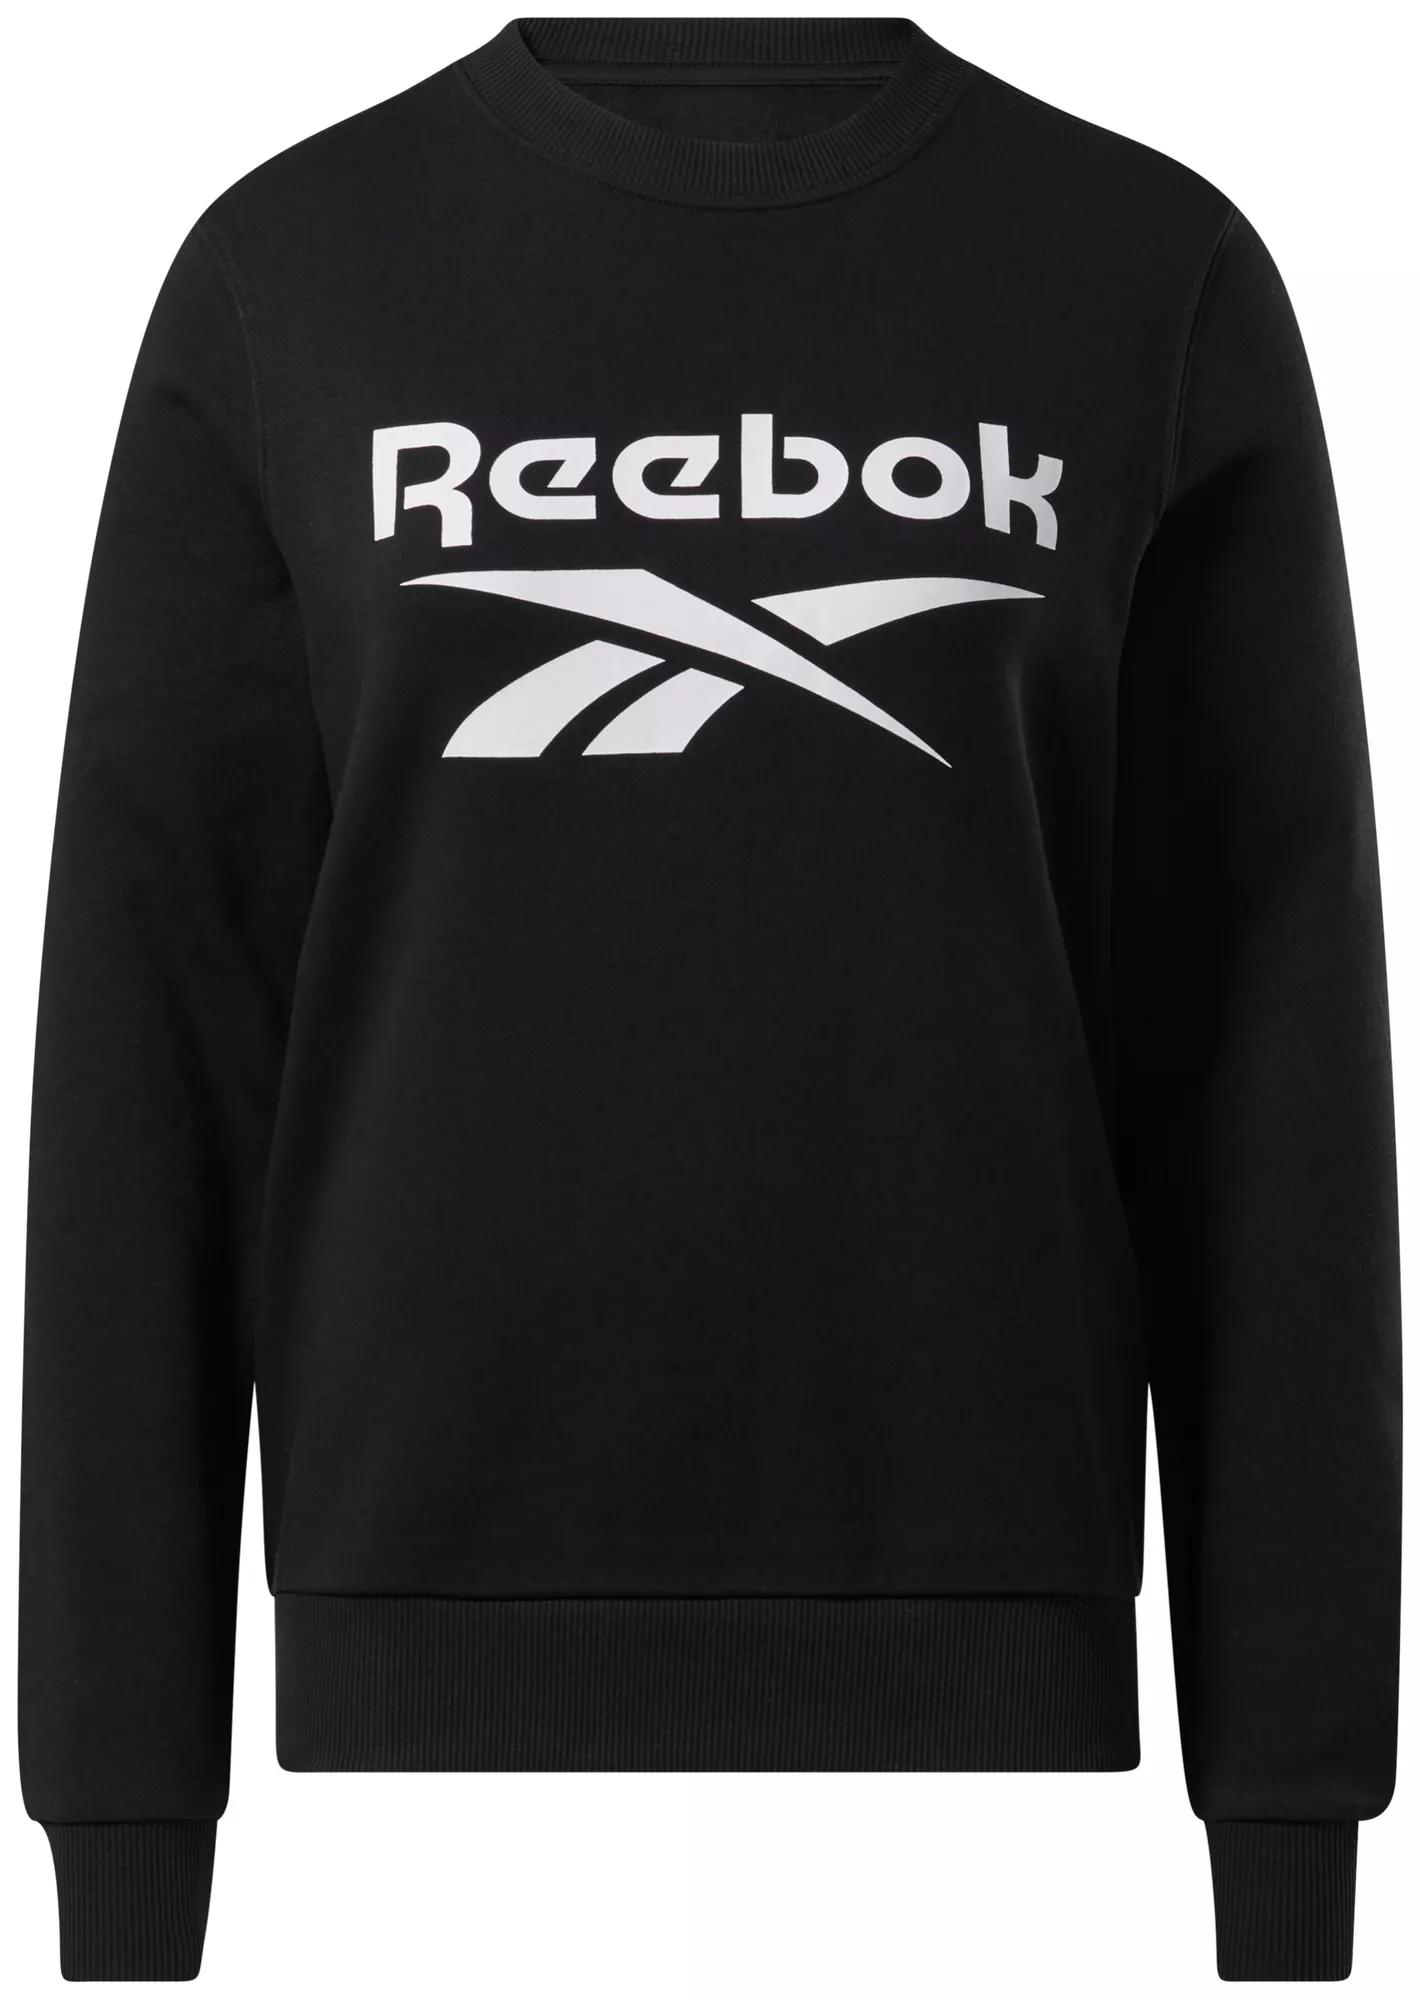 Reebok - Women's Identity Logo Fleece Pullover Hoodie - BLACK